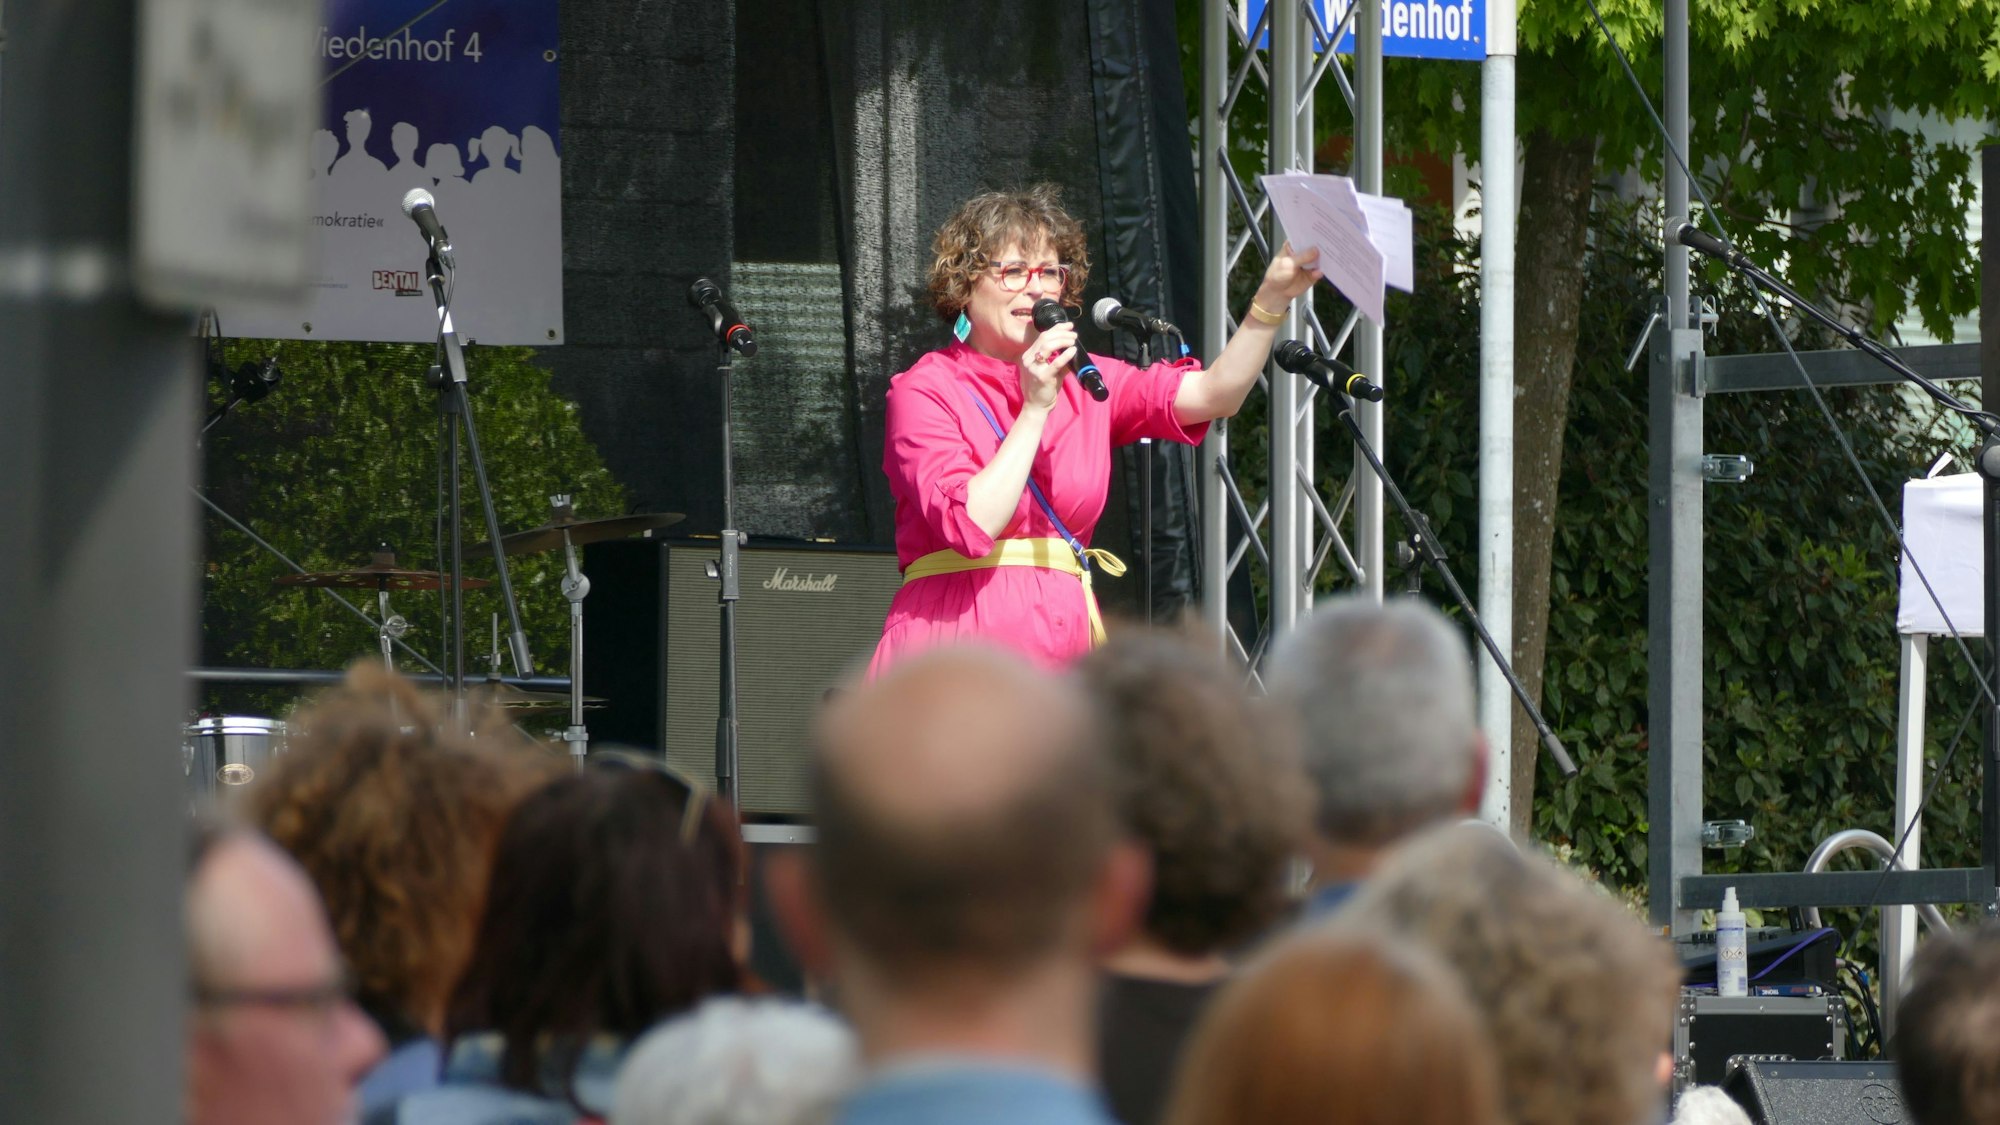 Eine Frau mit pinkfarbenem Kleid steht auf einer Bühne und spricht in ein Mikrofon.